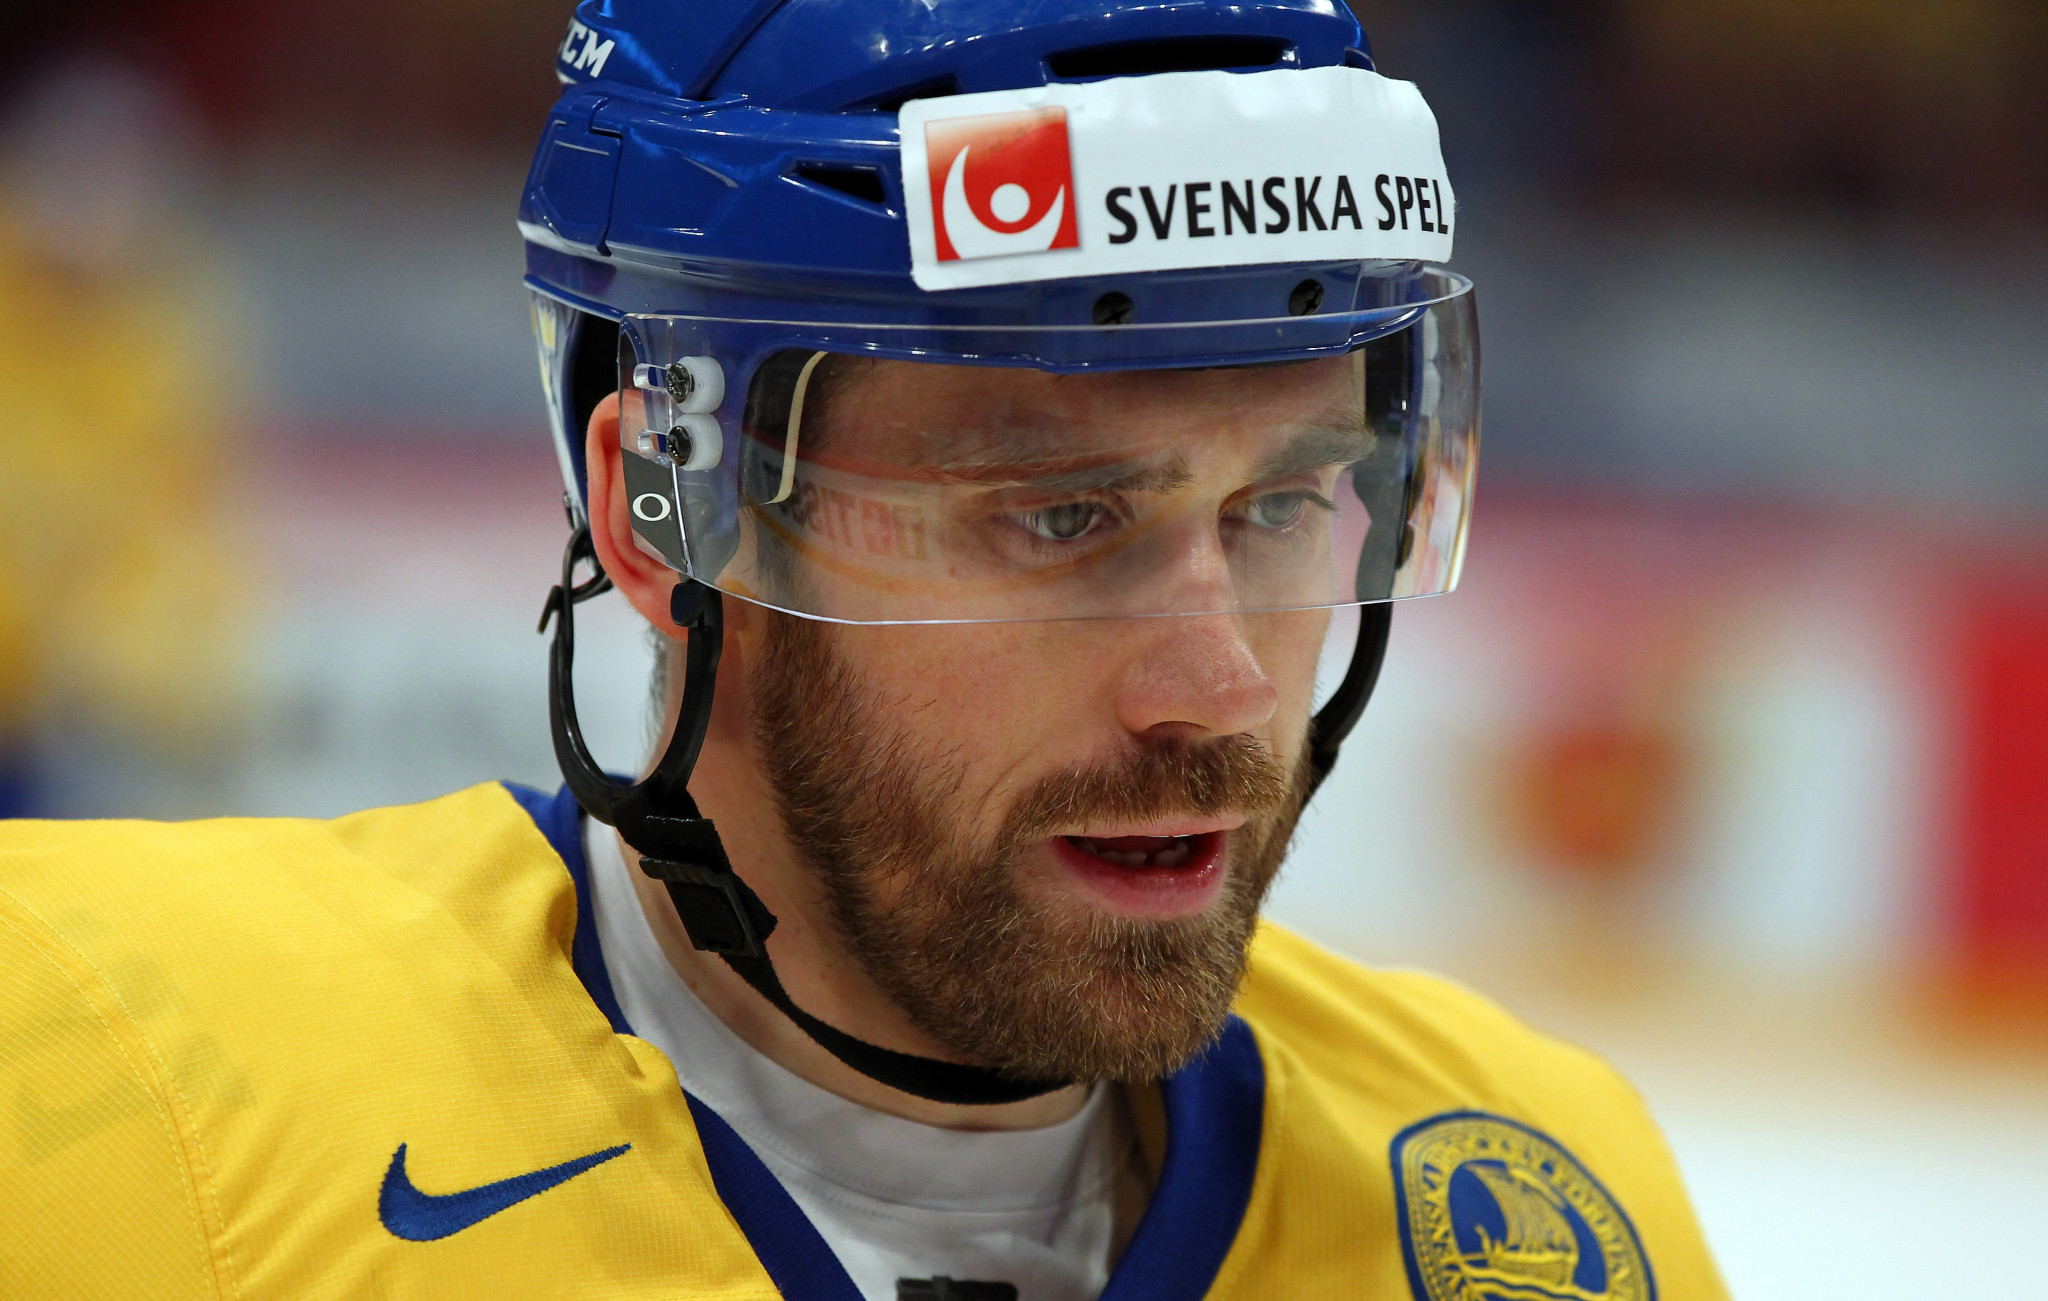 IIHF - Henrik Zetterberg